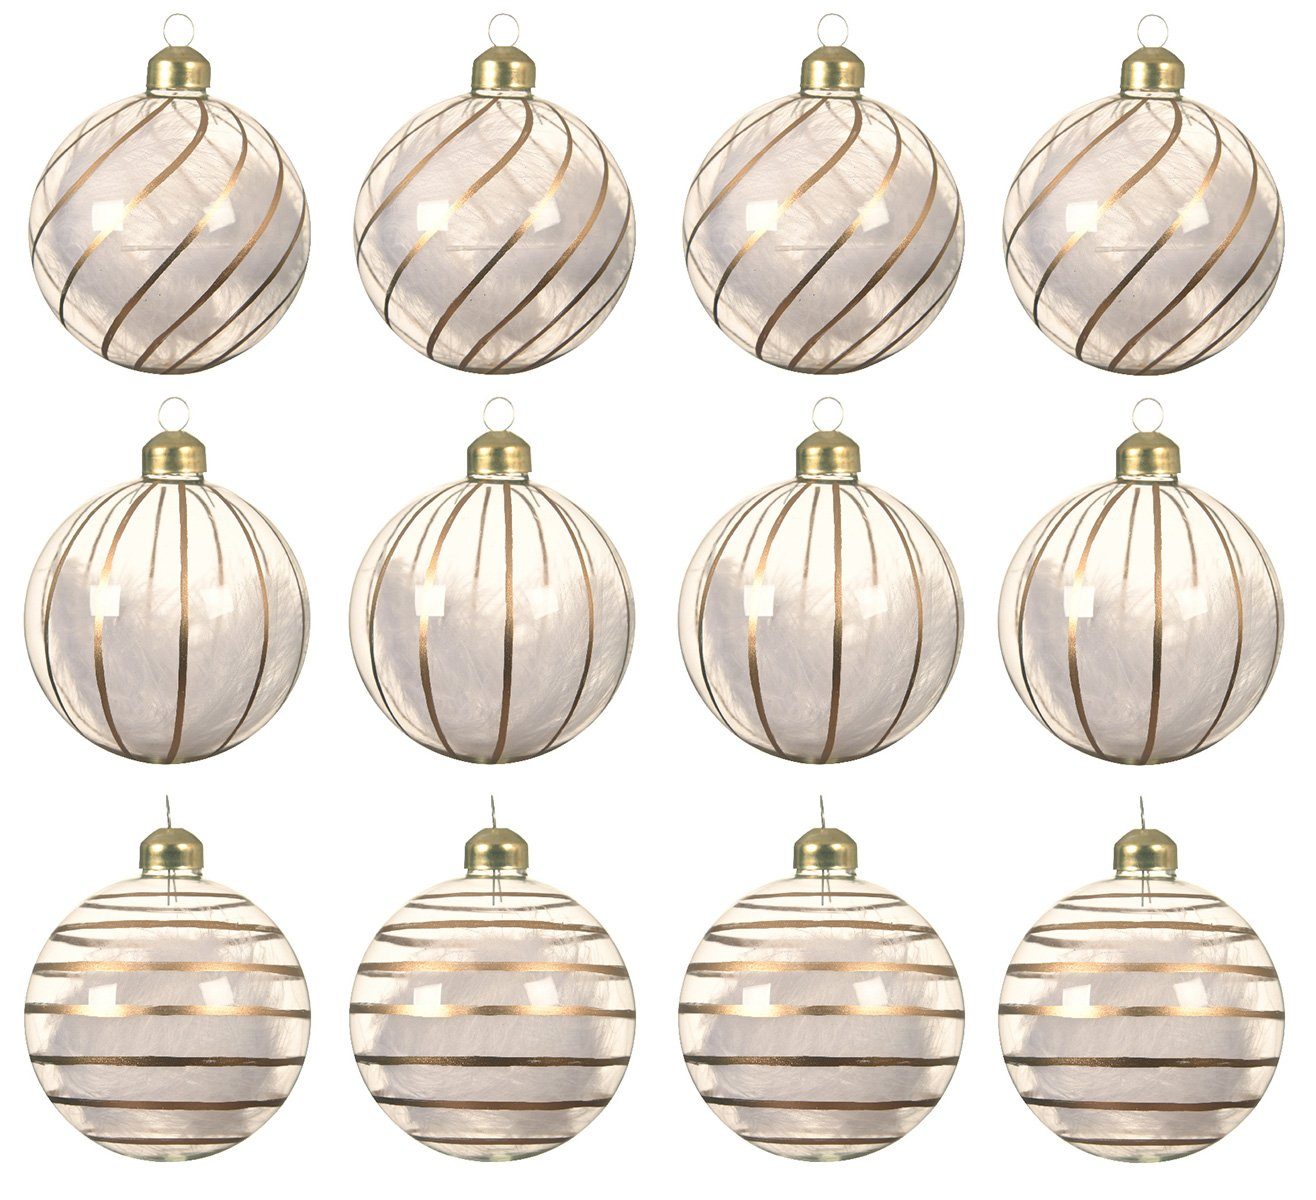 Decoris season decorations Weihnachtsbaumkugel, Weihnachtskugeln Glas 8cm mit Streifen / Federn gefüllt 12er Set klar